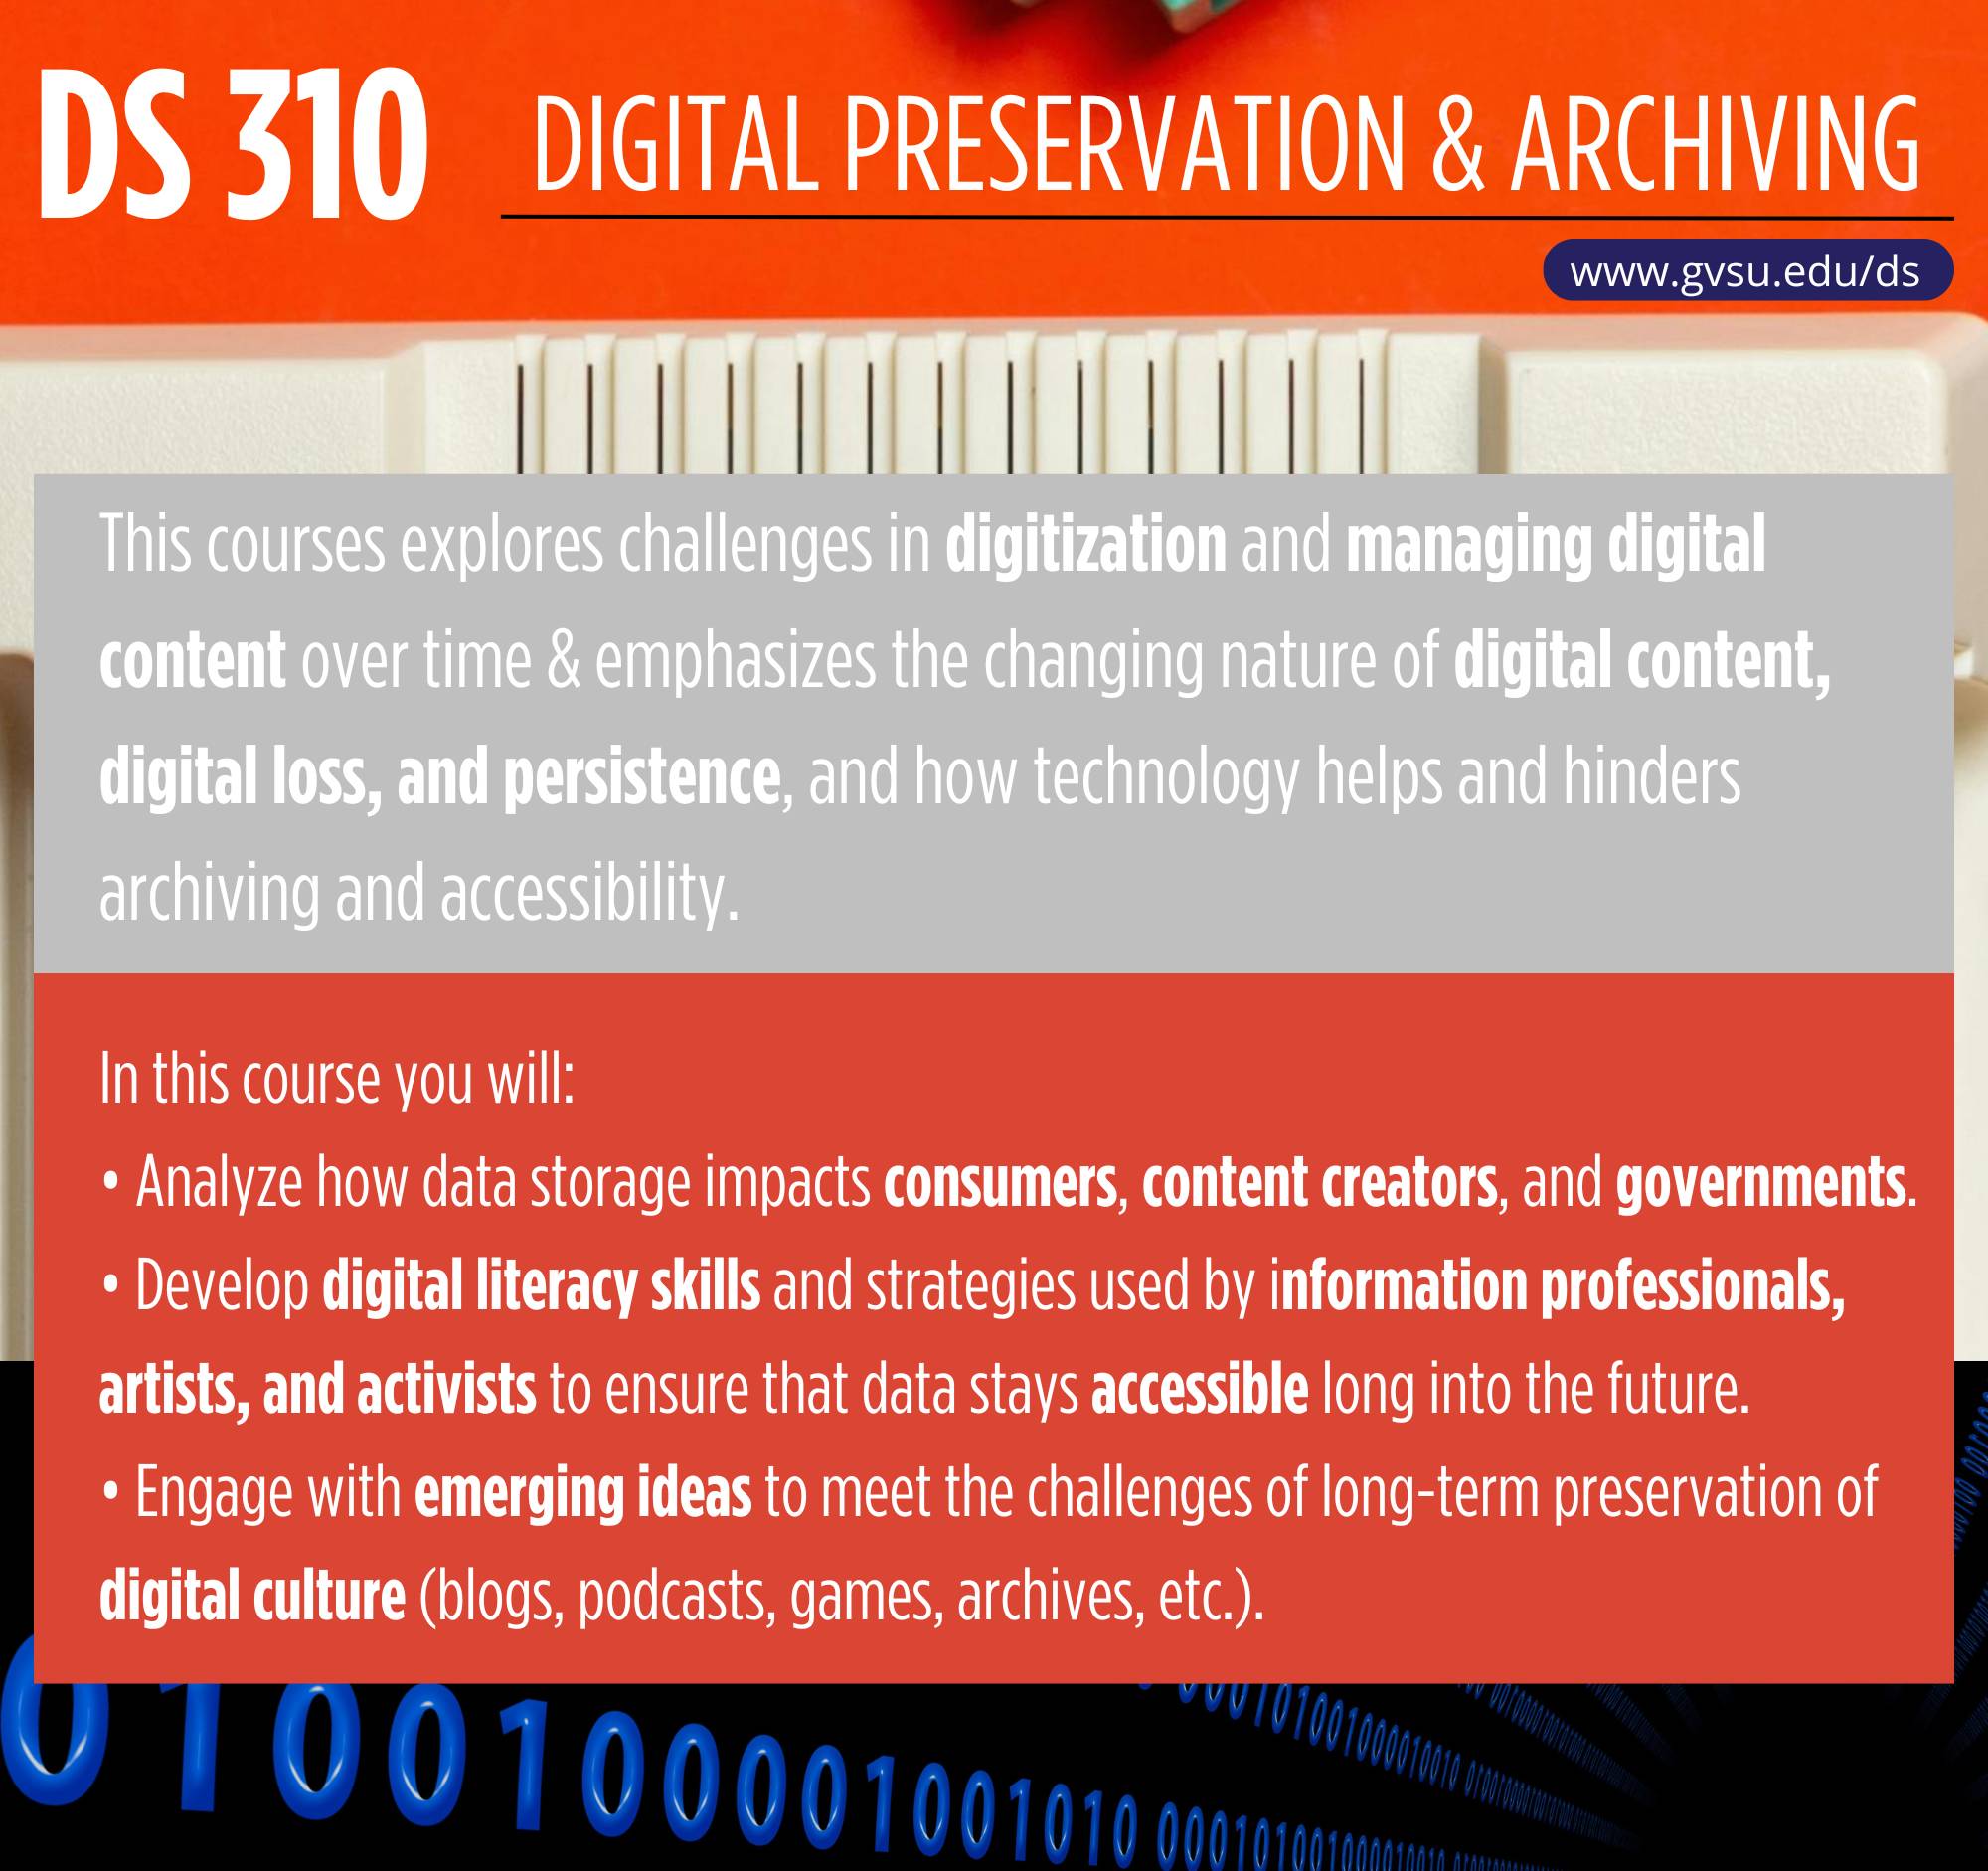 Image of promotional flier for DS 310, Digital Preservation